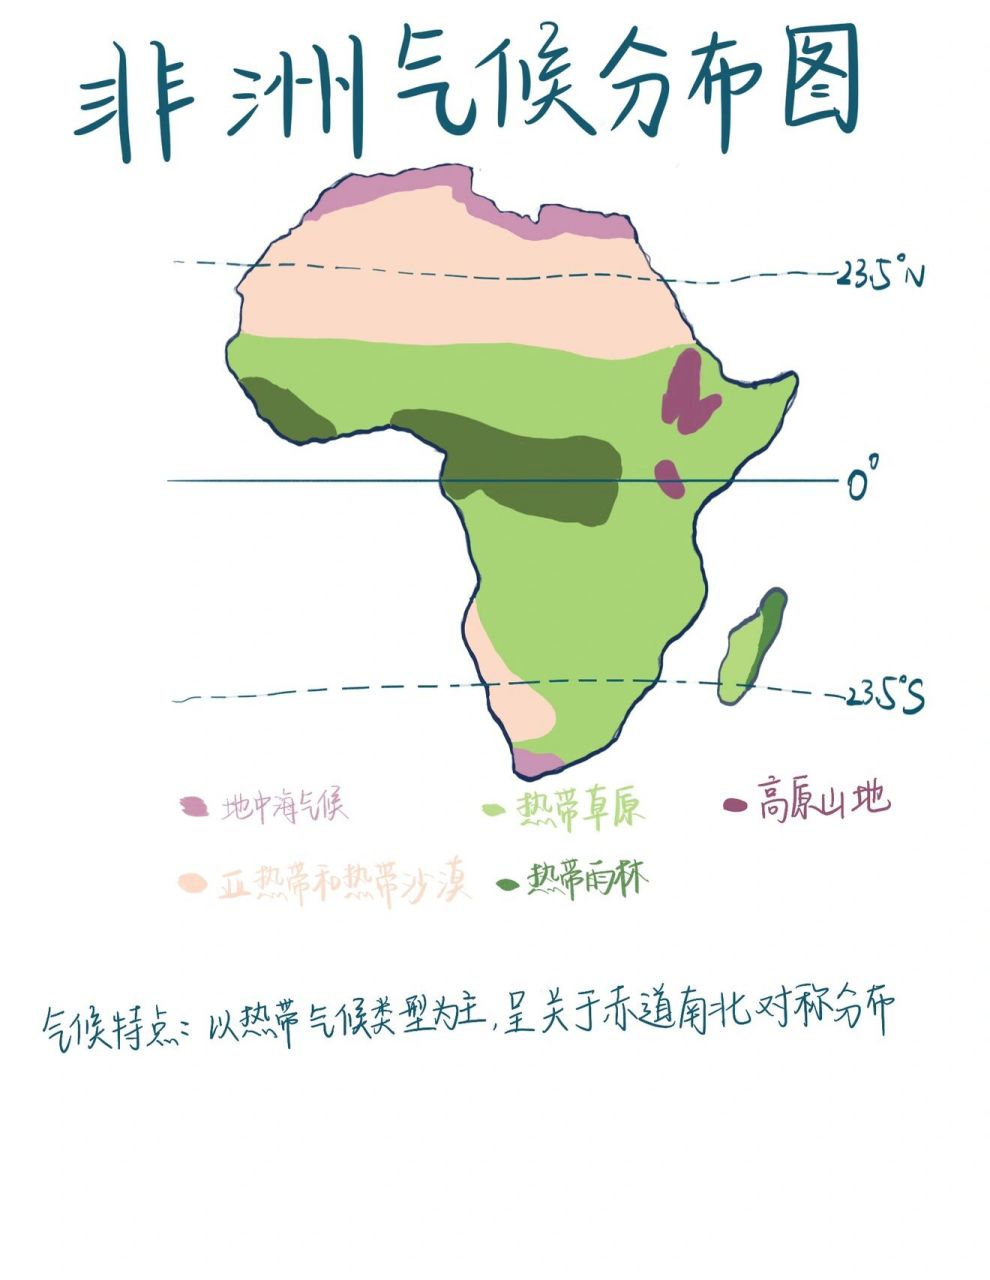 非洲气候分布图简图图片